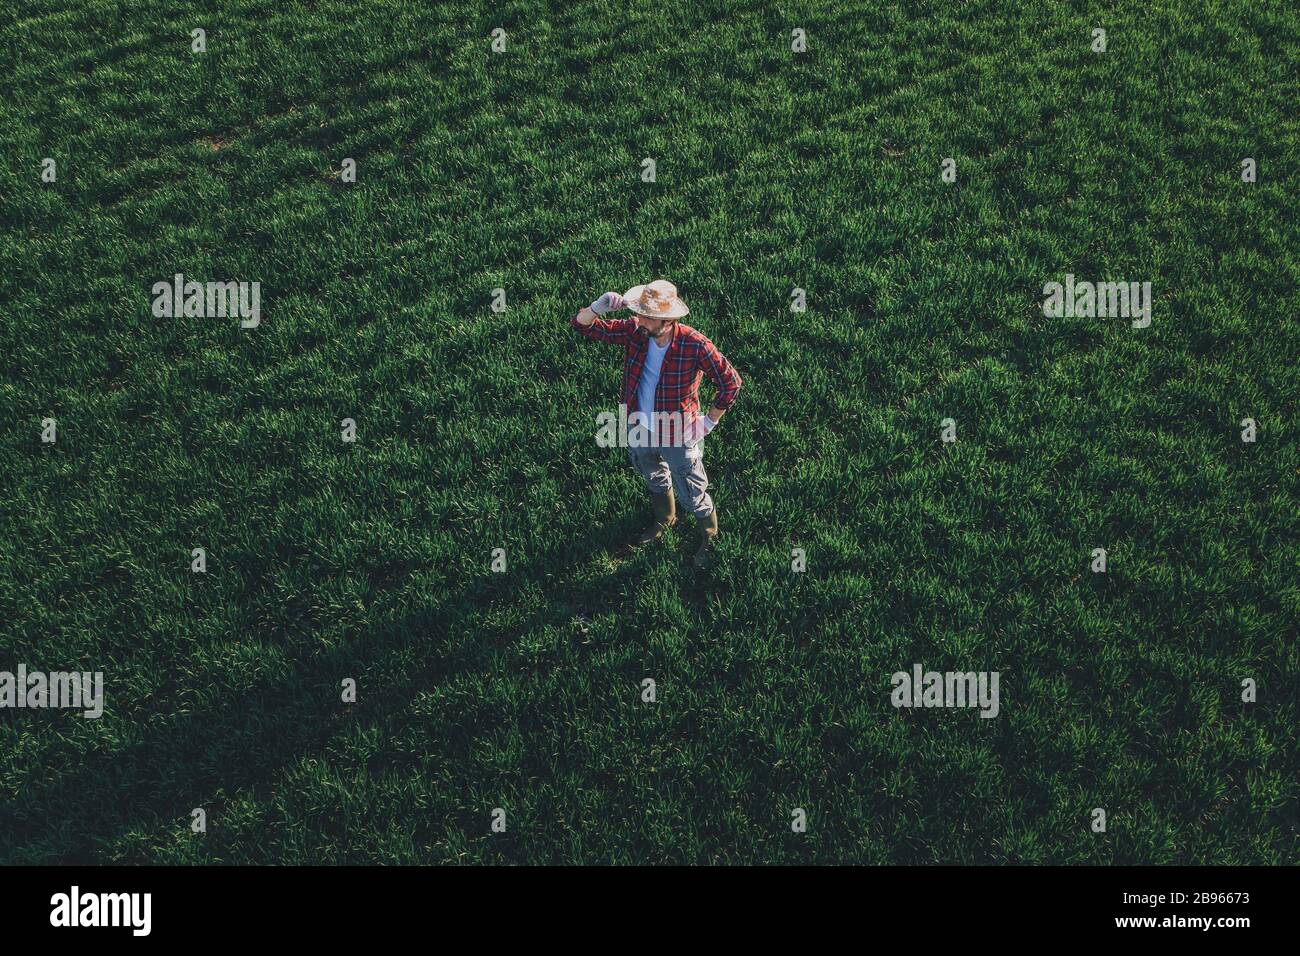 Weizenbauer steht und blickt auf das Weizengrasfeld, Luftbild eines erwachsenen männlichen Landarbeiters, der Plantage untersucht Stockfoto